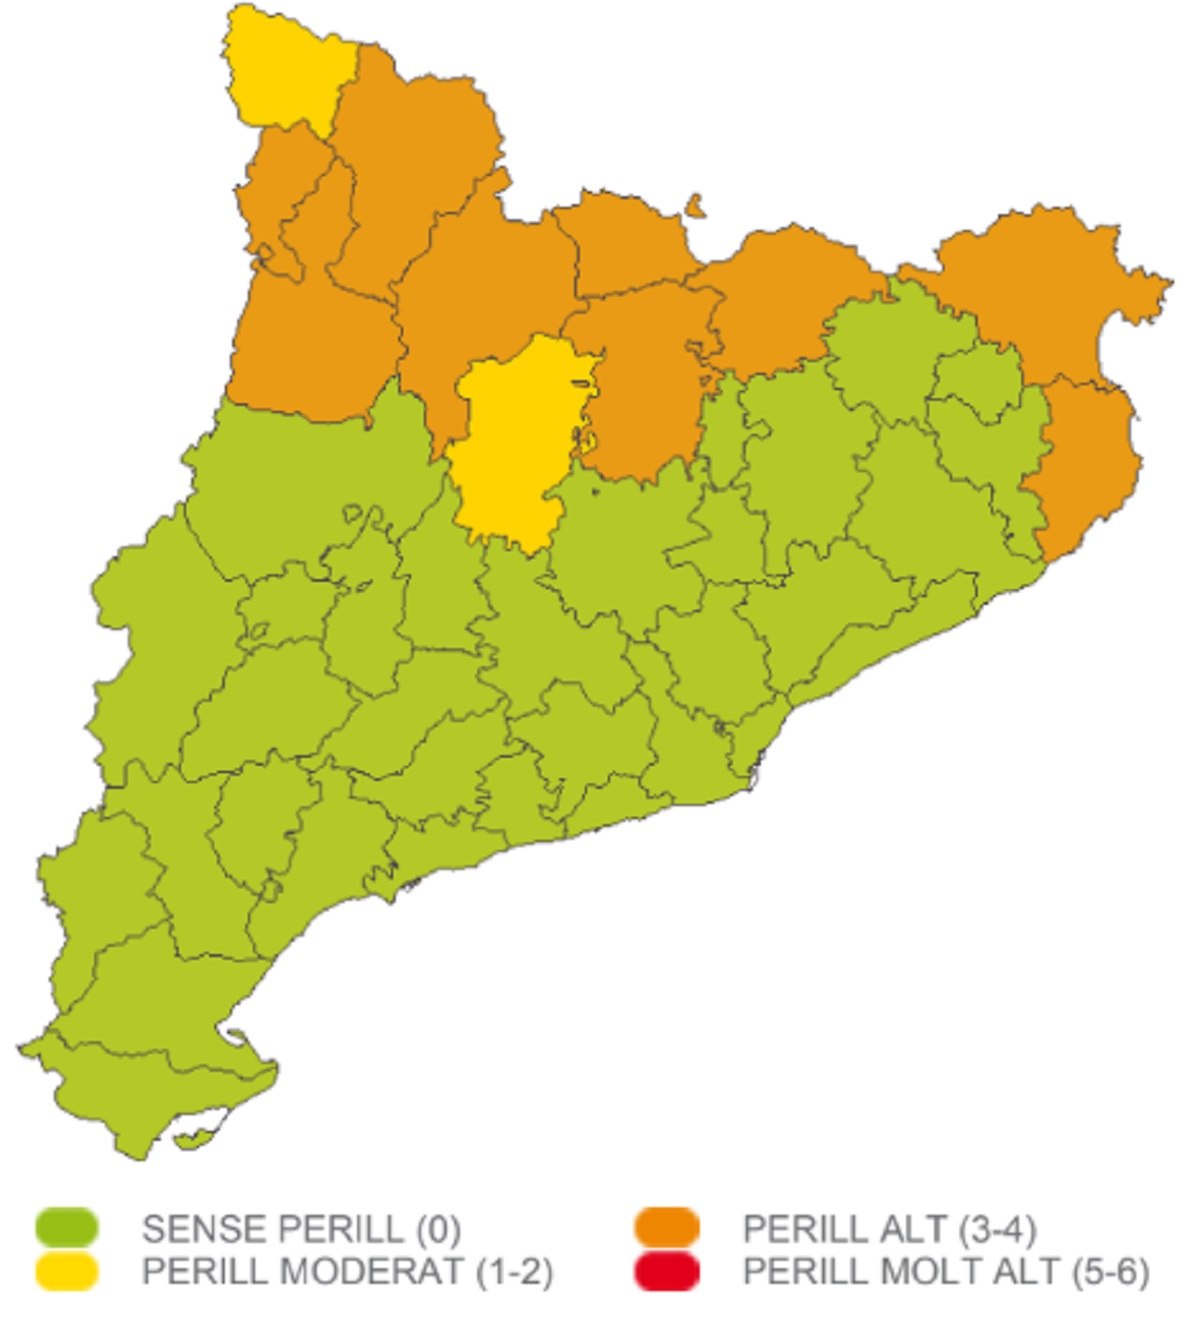 Perill fort vent dimecres, 22 de novembre Catalunya Meteocat